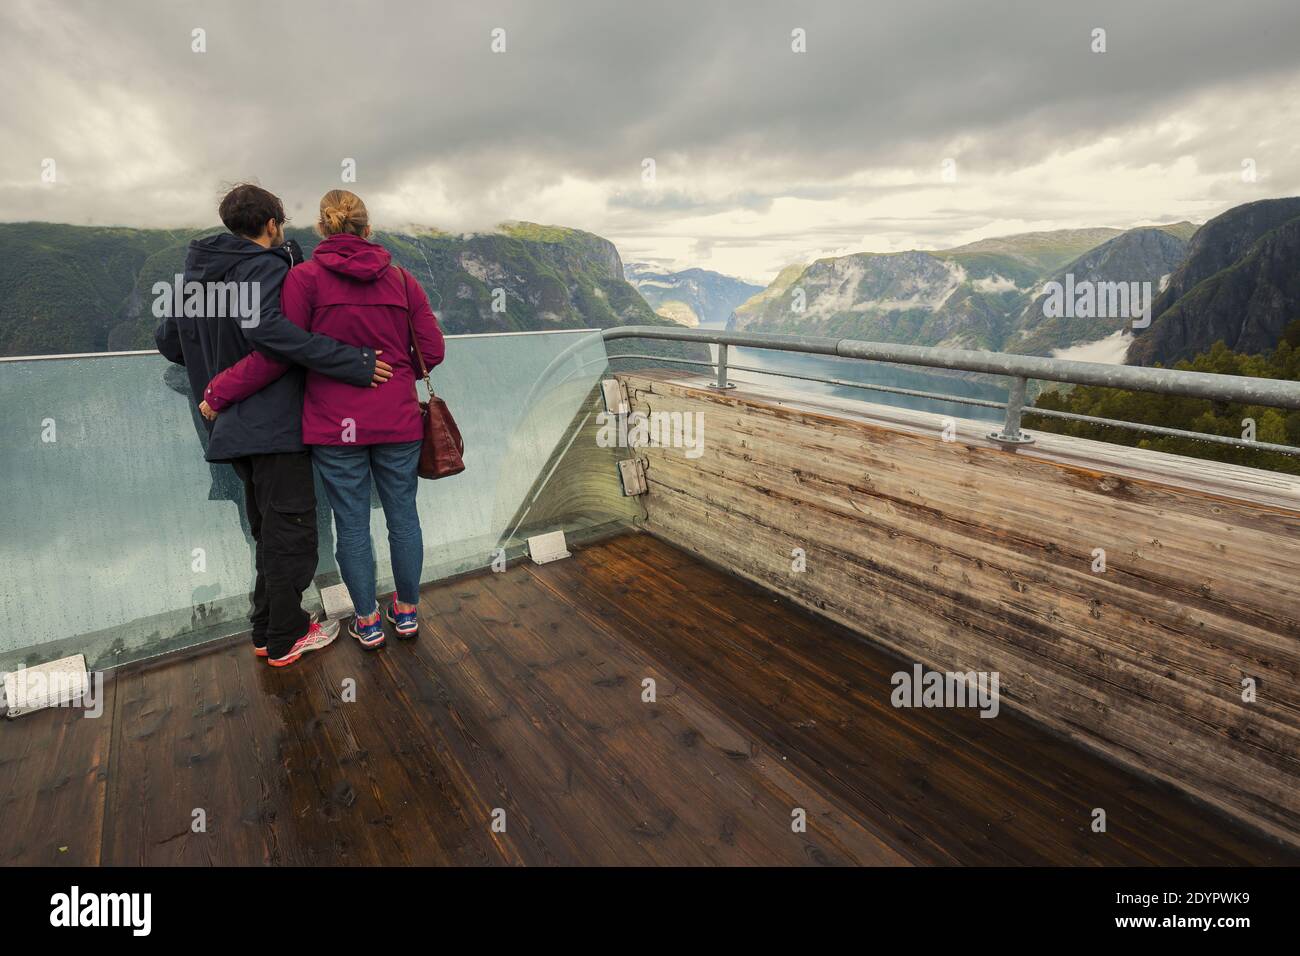 Couple touristique bénéficiant d'une vue sur le fjord paysage d'Aurlandsfjord depuis le point d'observation de Stegastein. Norvège Scandinavie. Route touristique nationale d'Aurlandsfjellet Banque D'Images